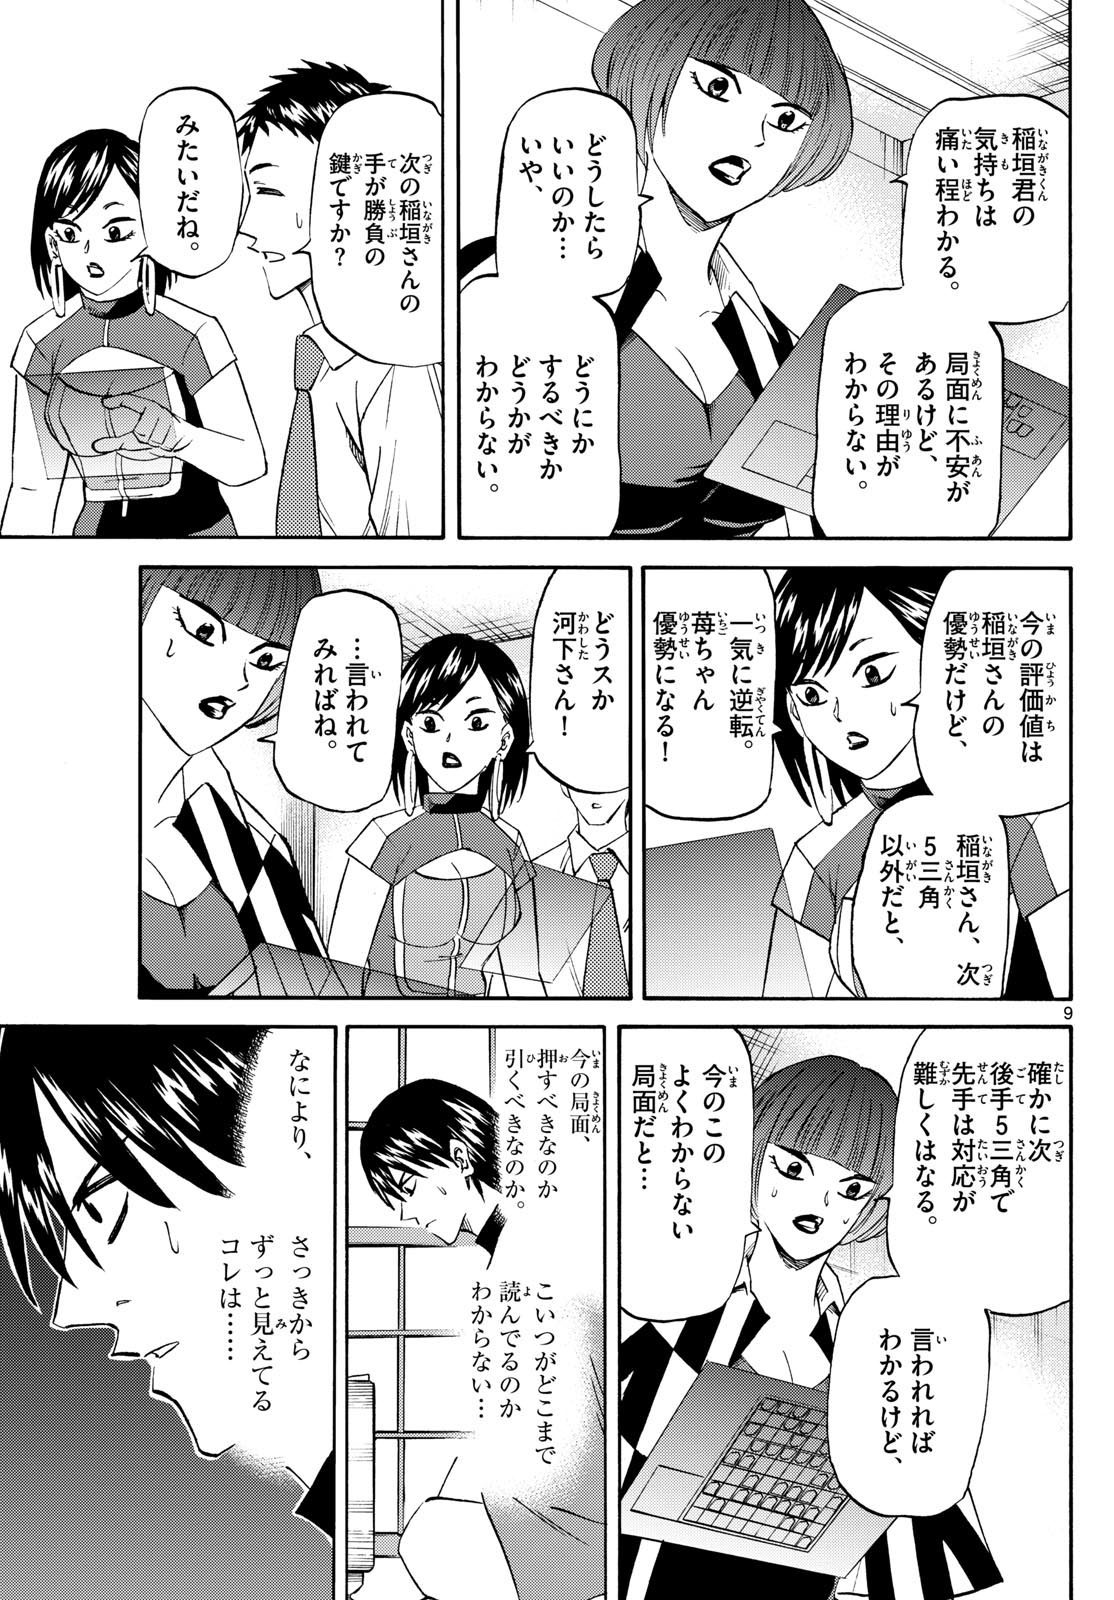 Tatsu to Ichigo - Chapter 198 - Page 9